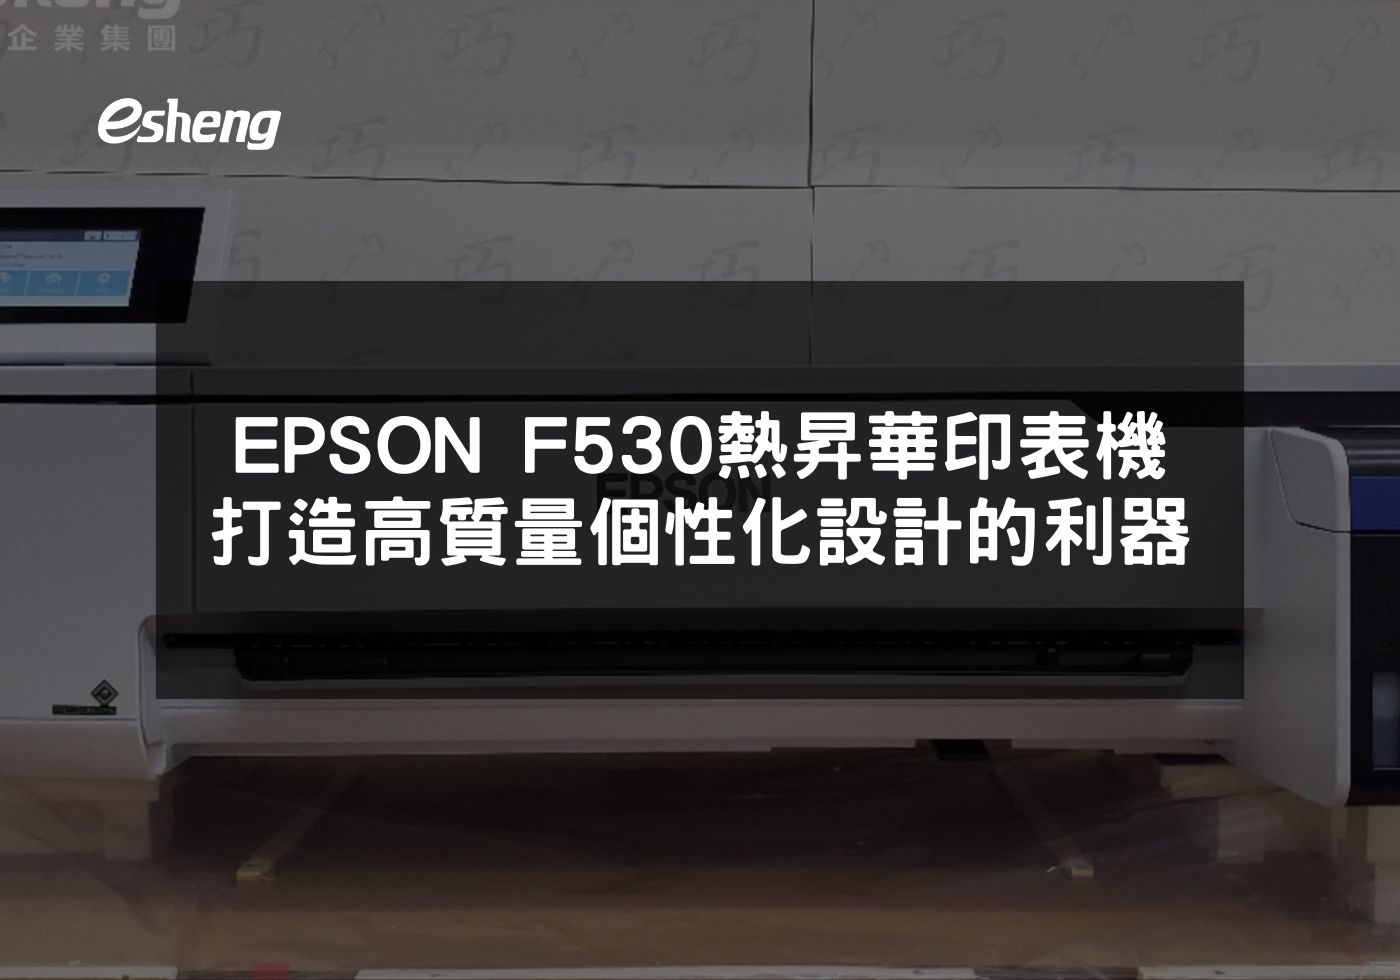 EPSON F530熱昇華印表機實現個性化設計